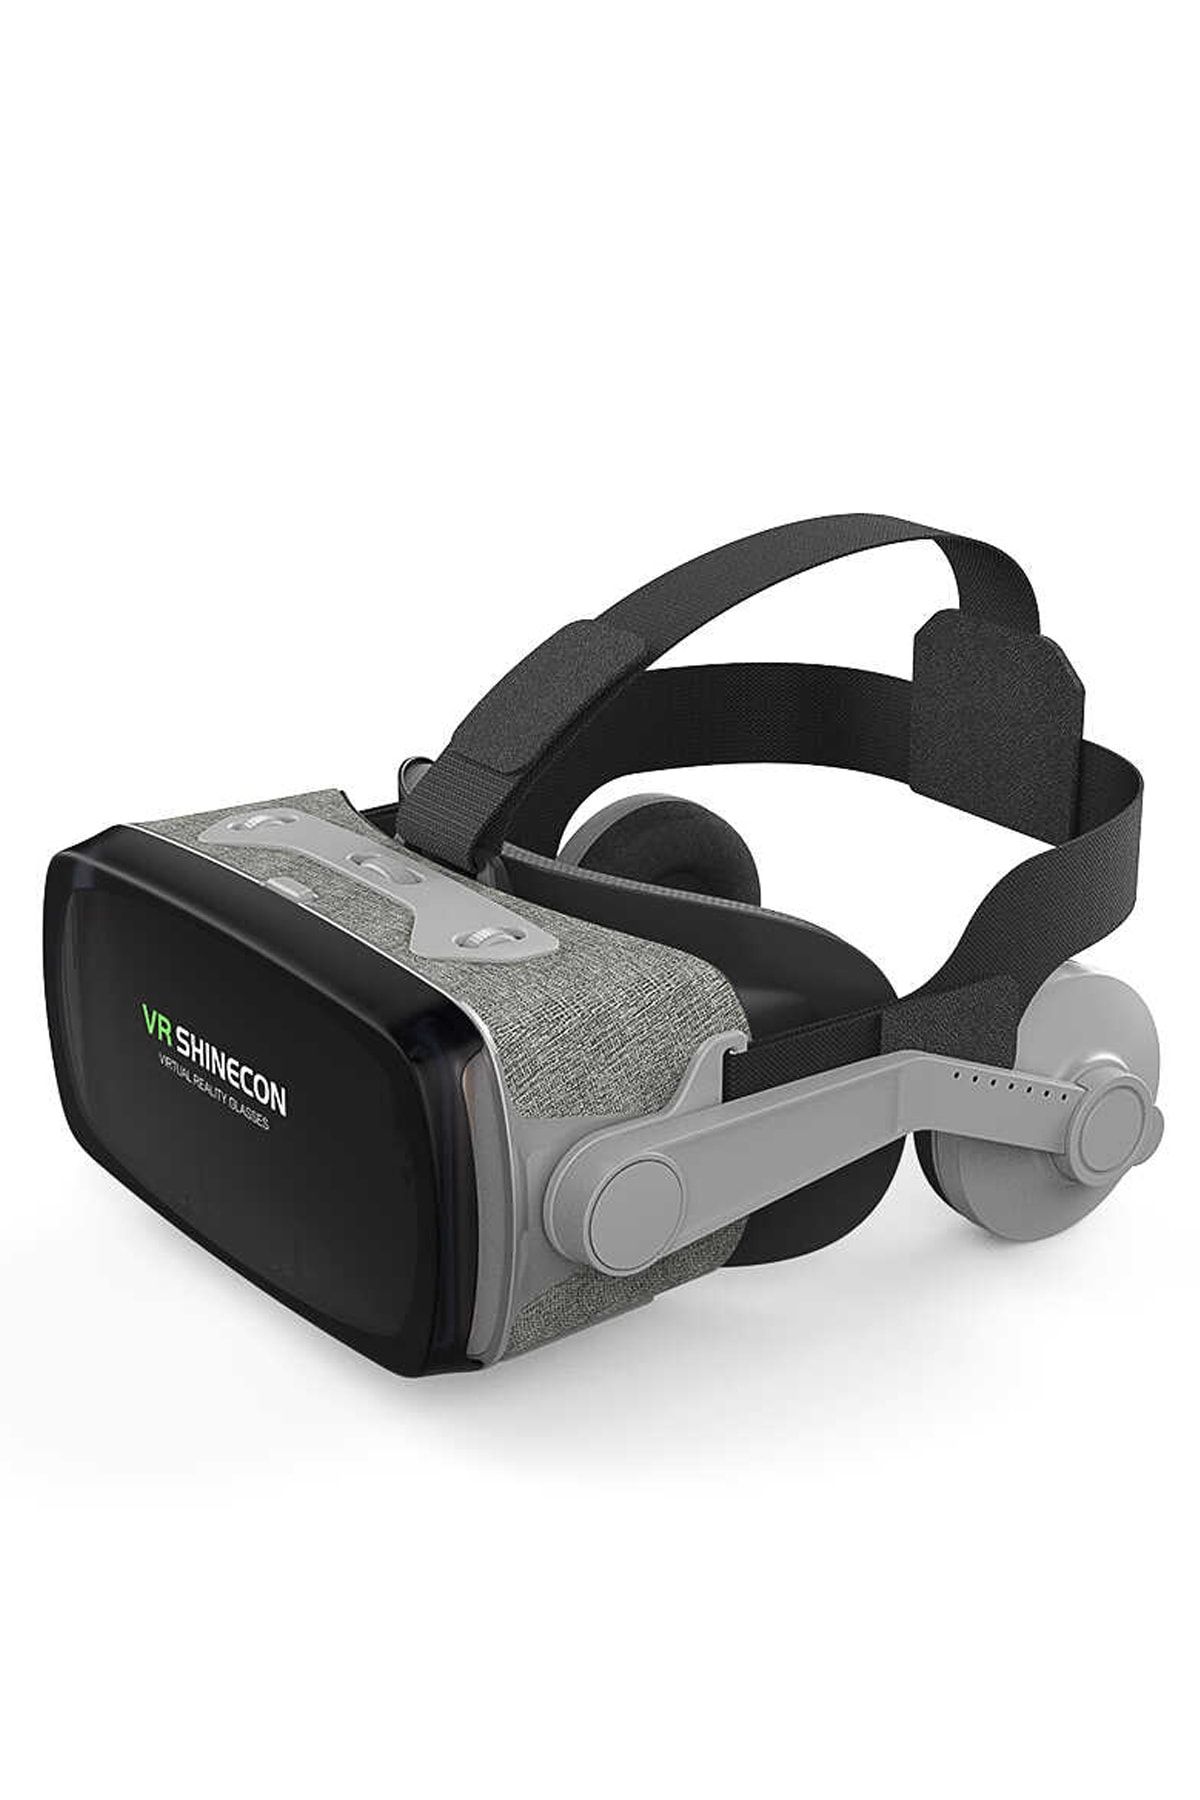 VR Shinecon Orjinal Shinecon 3d Sanal Gerçeklik Gözlüğü 4.7-6.3 Inç